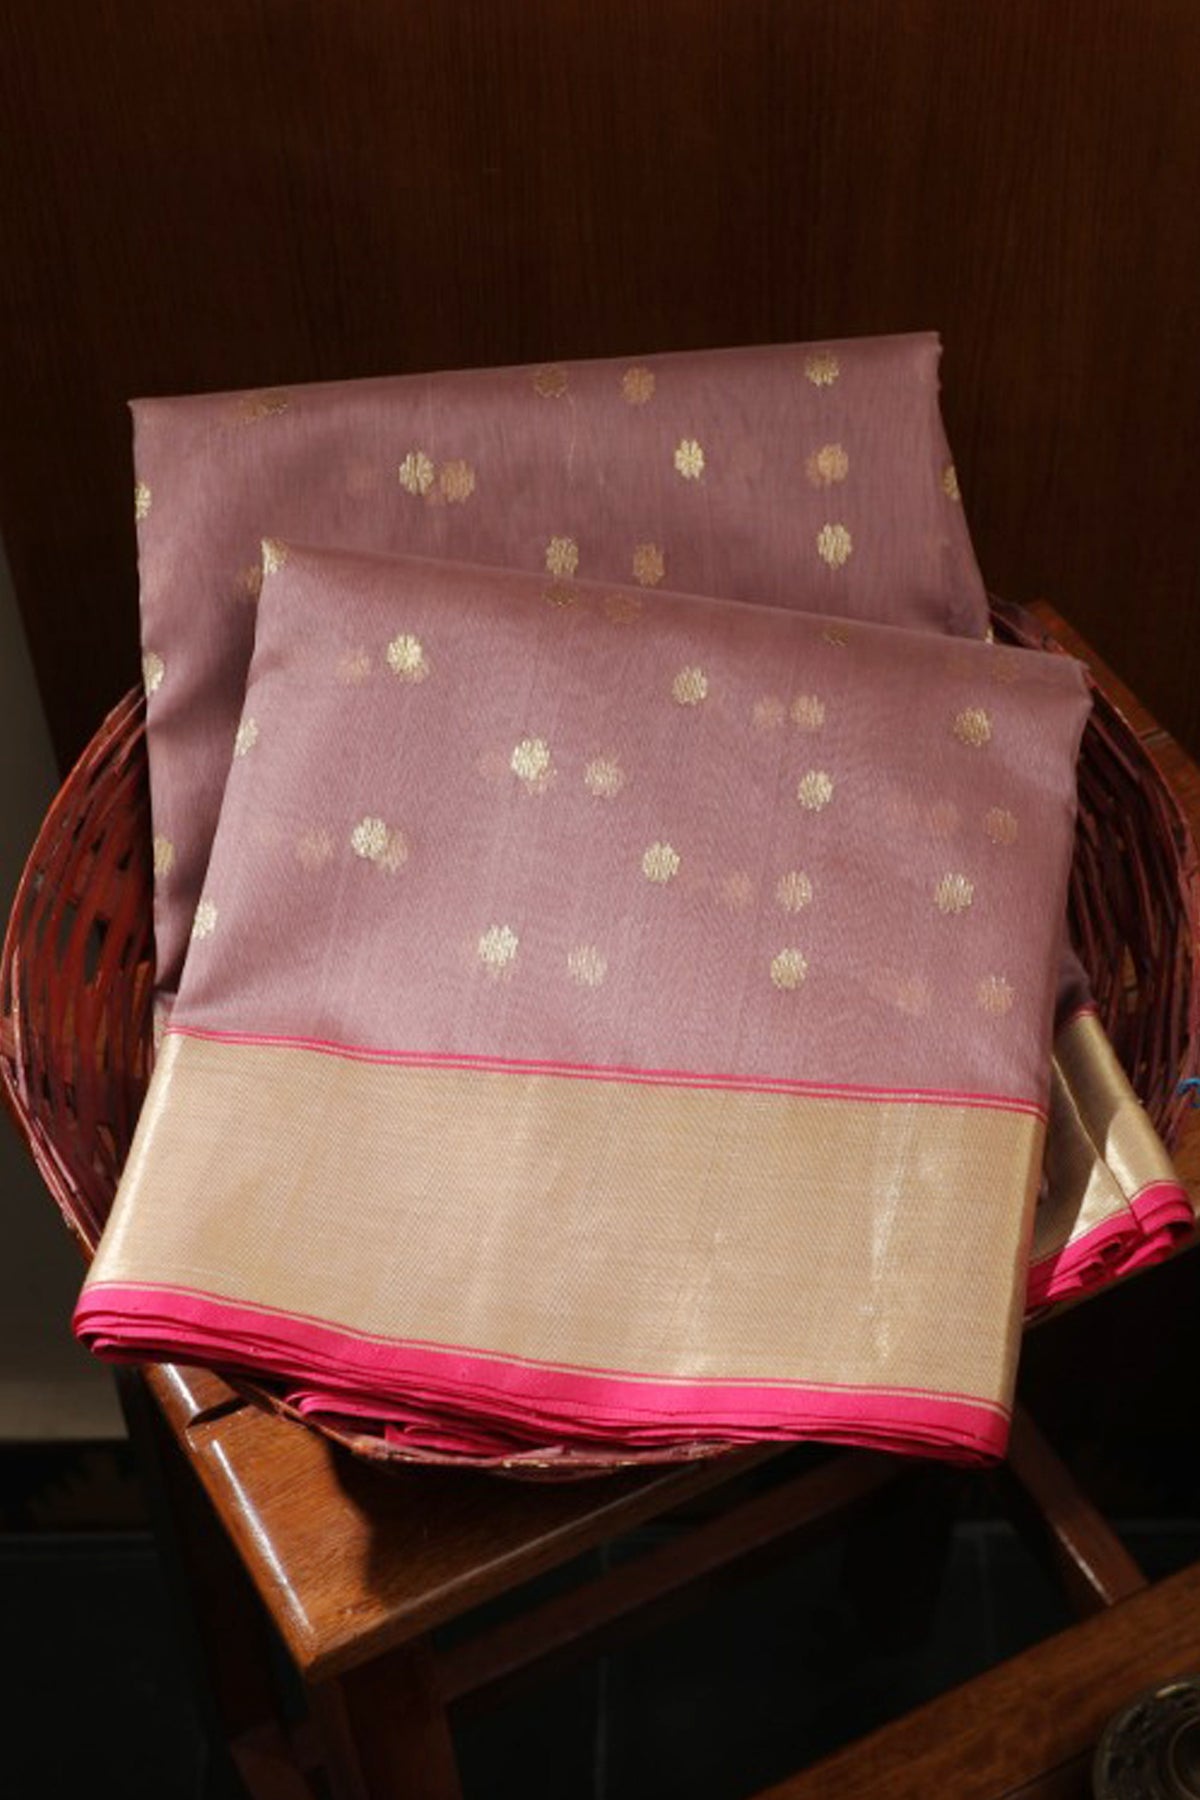 Floral Design Onion Pink Chanderi Silk Saree